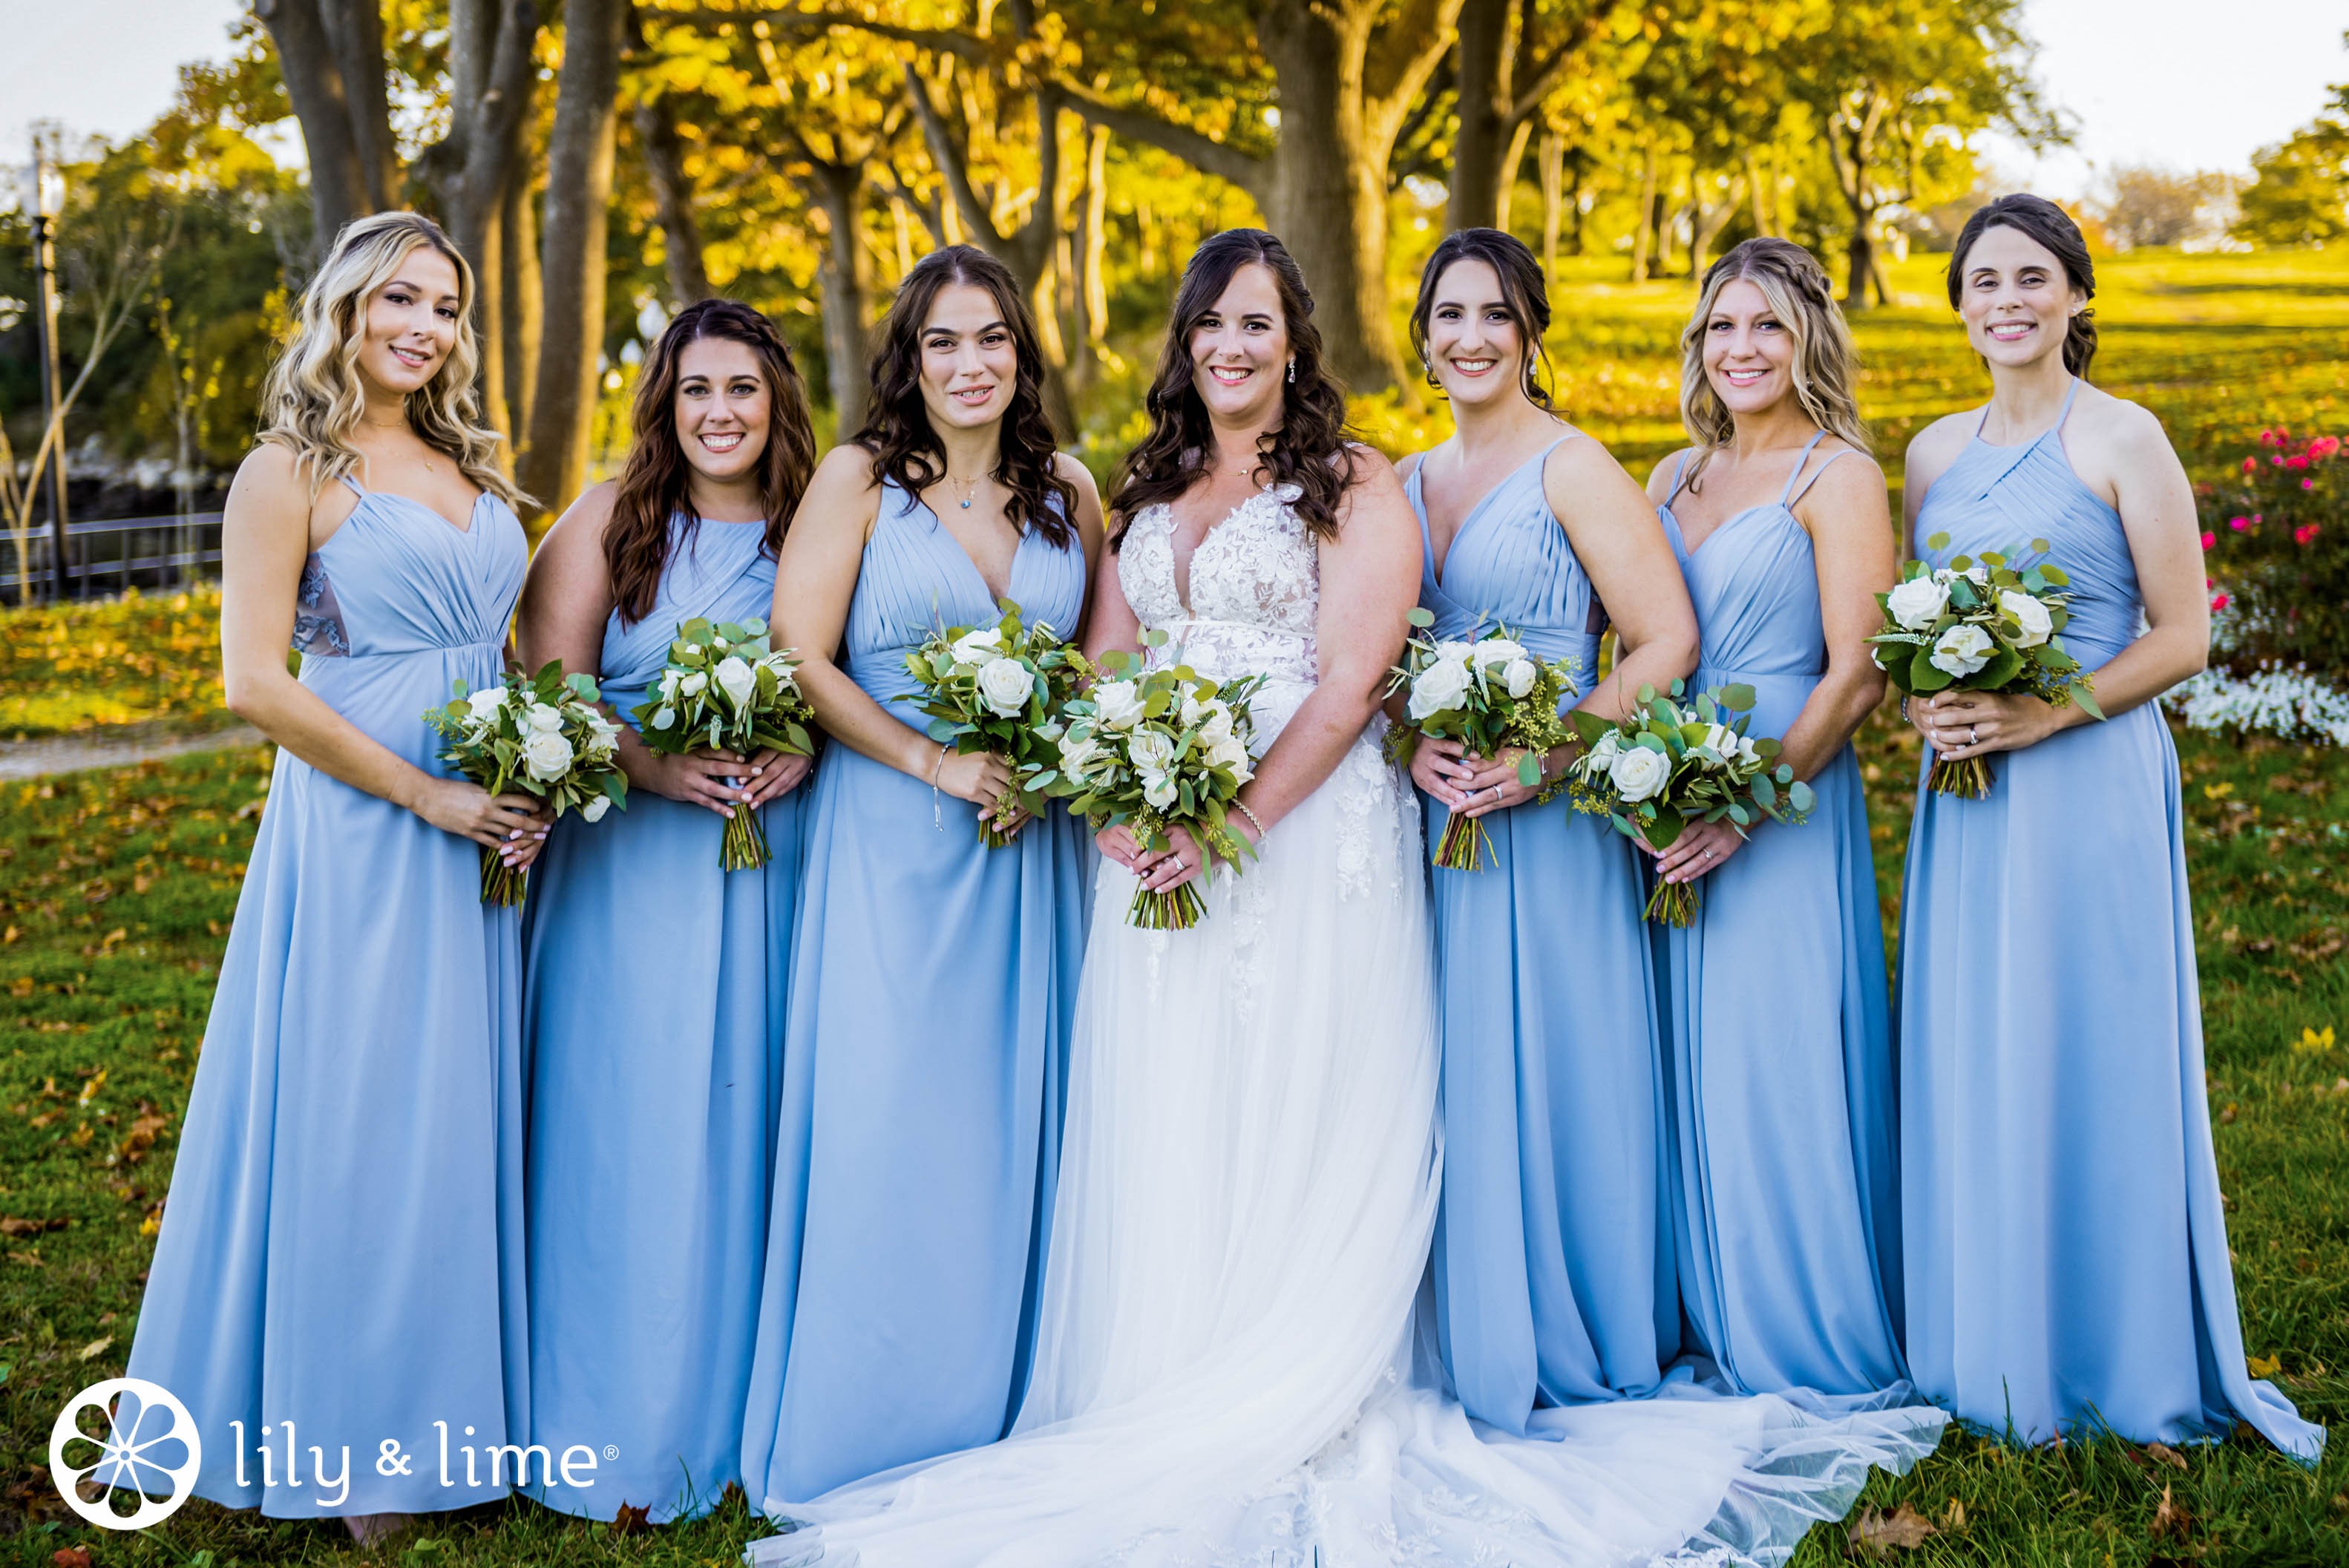 Bridal Dresses In Blue Colour | 3d-mon.com